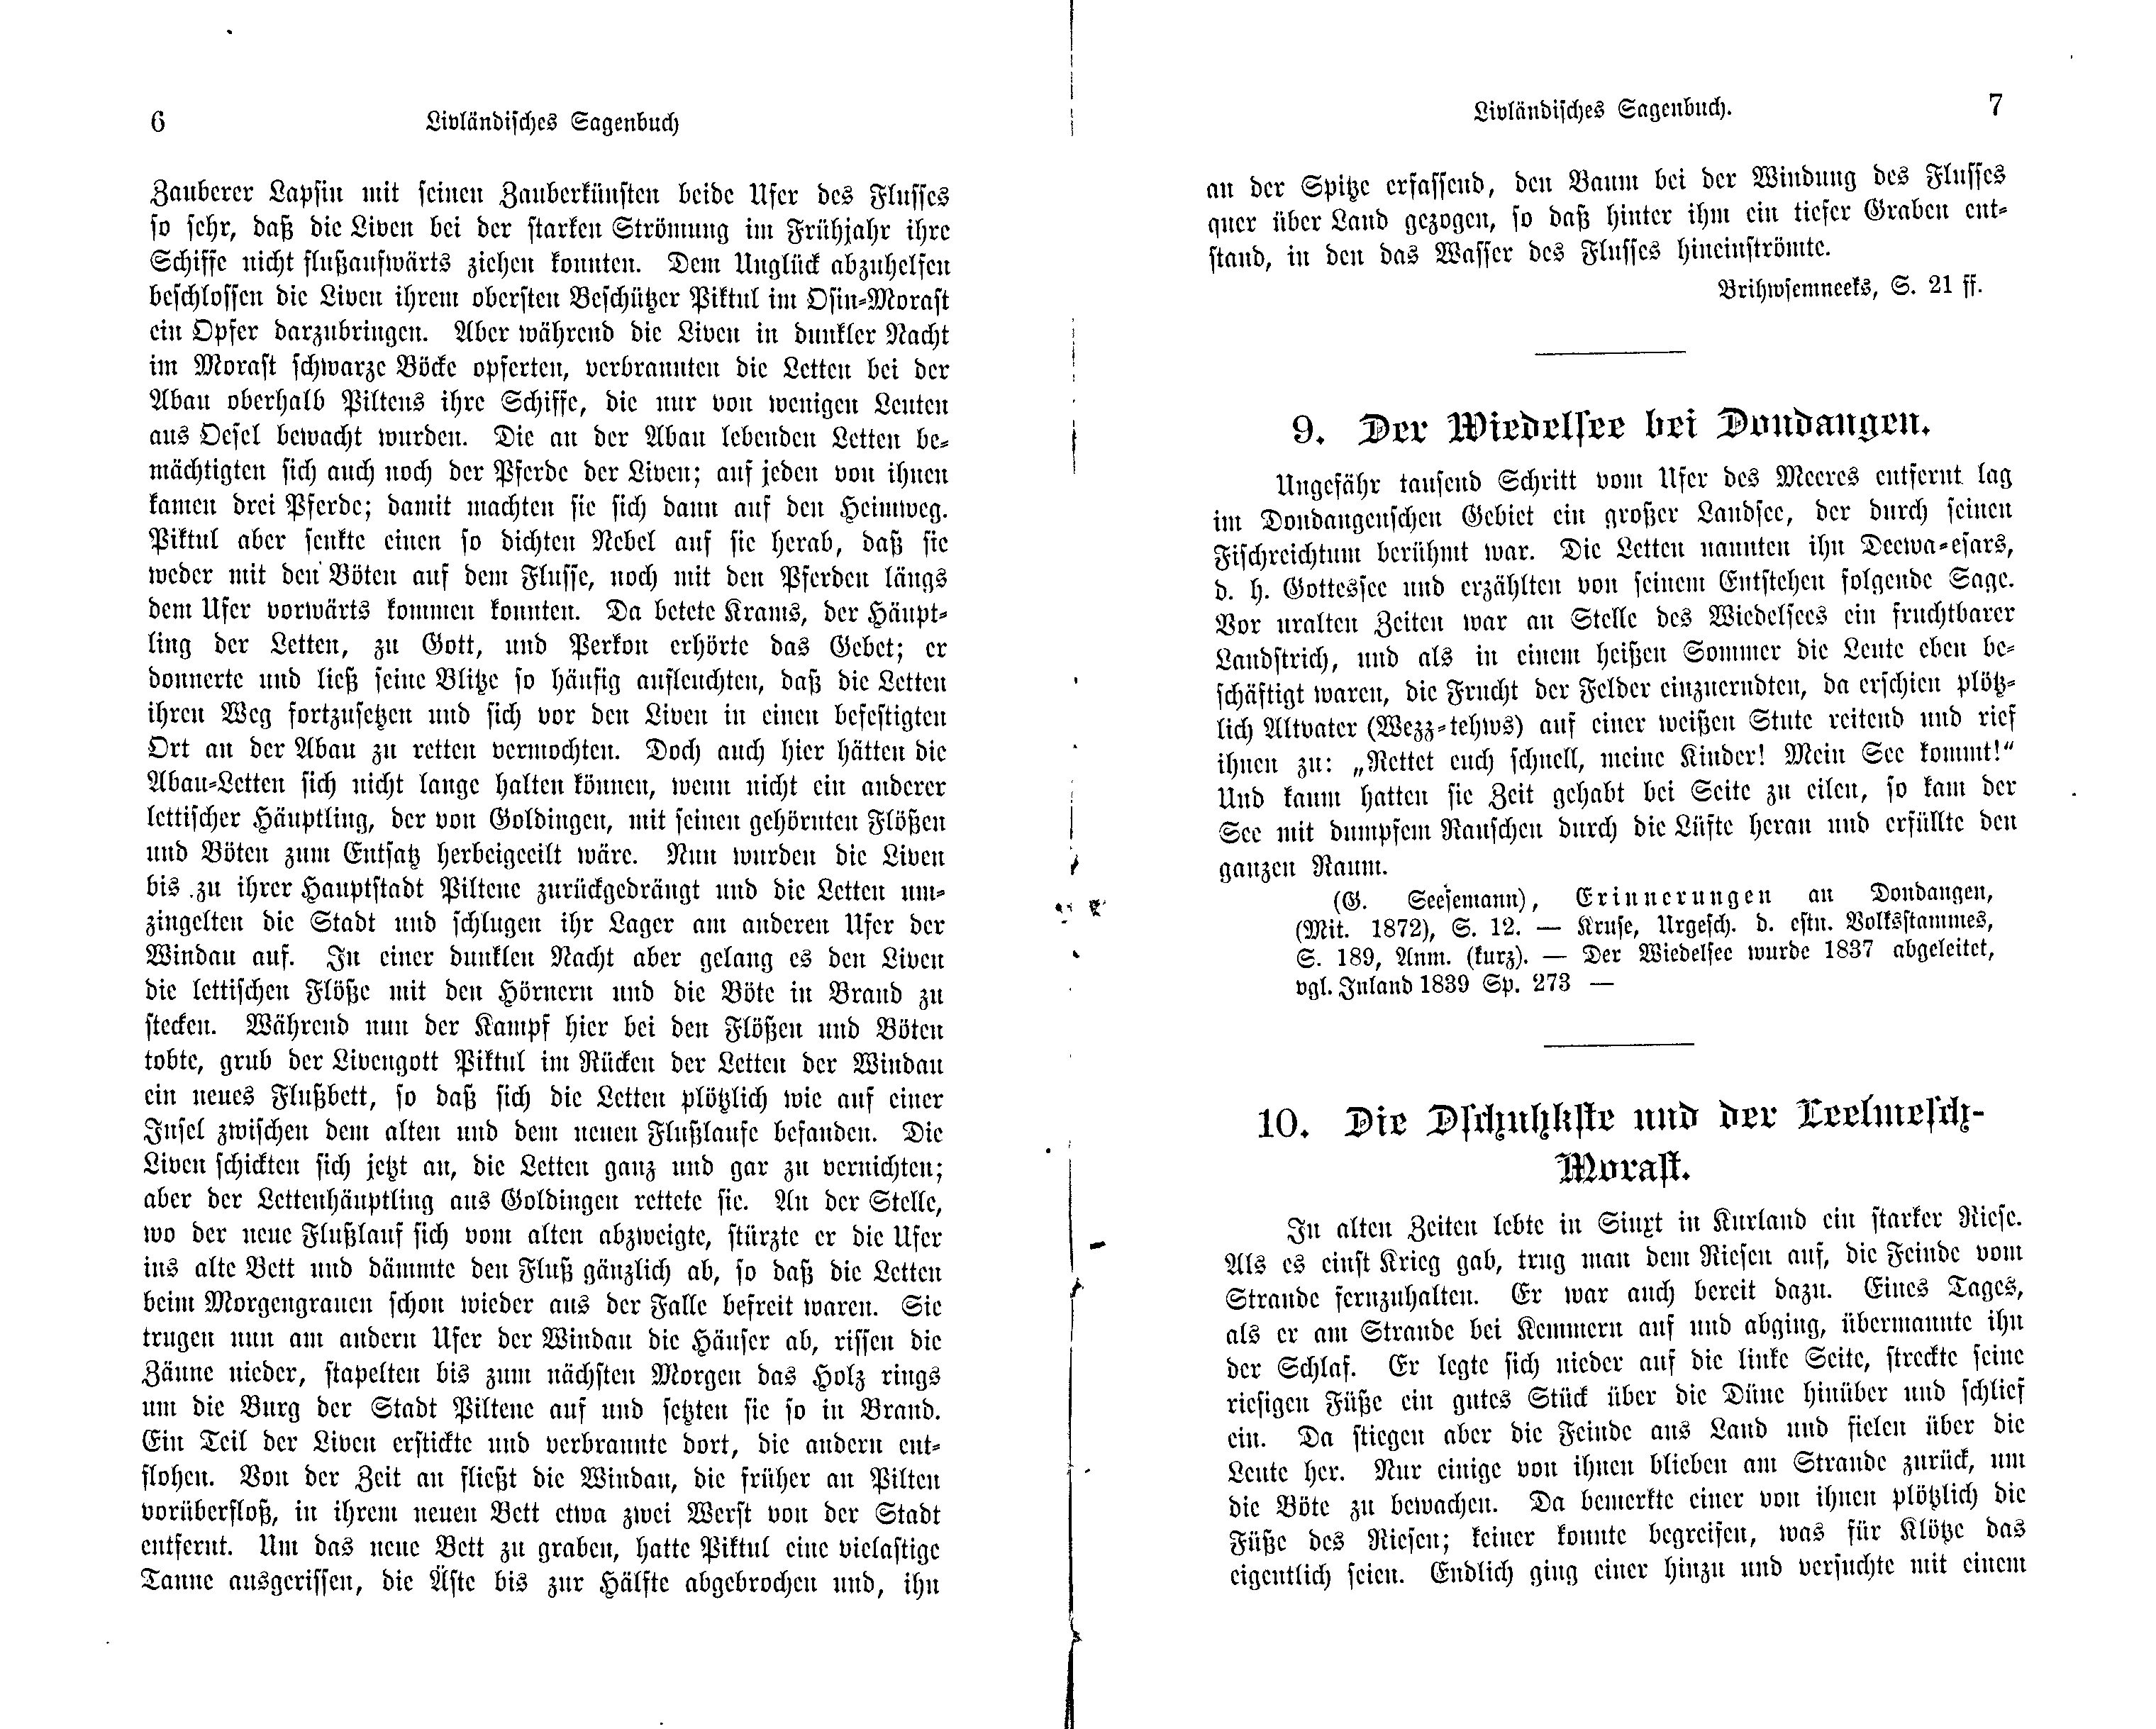 Die Dschuhkste und der Leelmesch-Morast (1897) | 1. (6-7) Haupttext